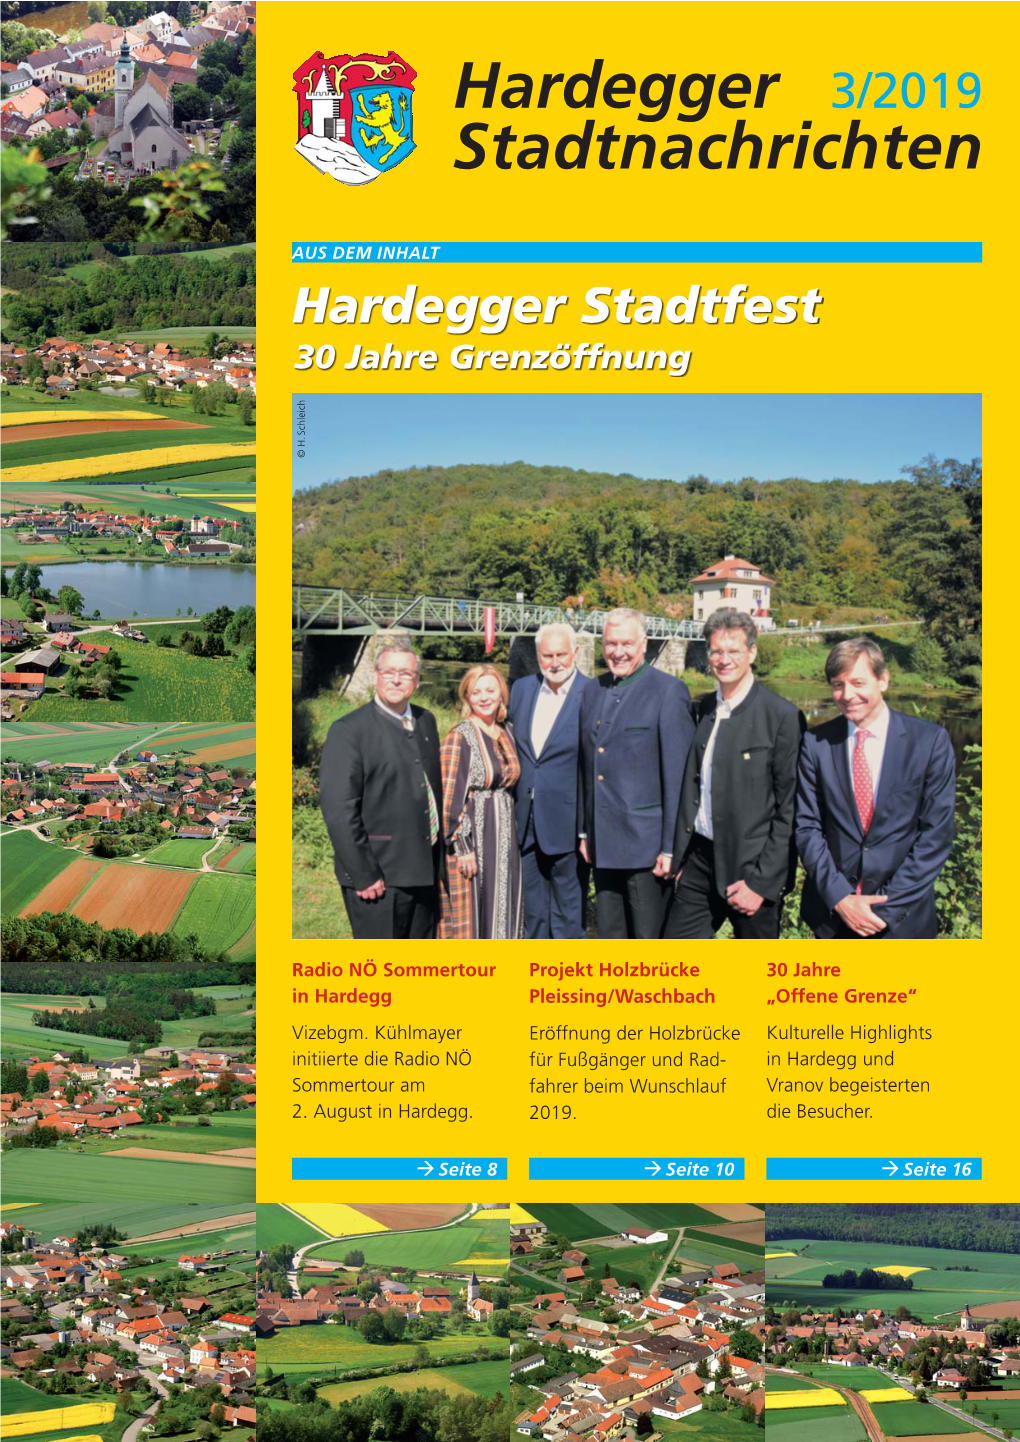 Hardegger 3/2019 Stadtnachrichten